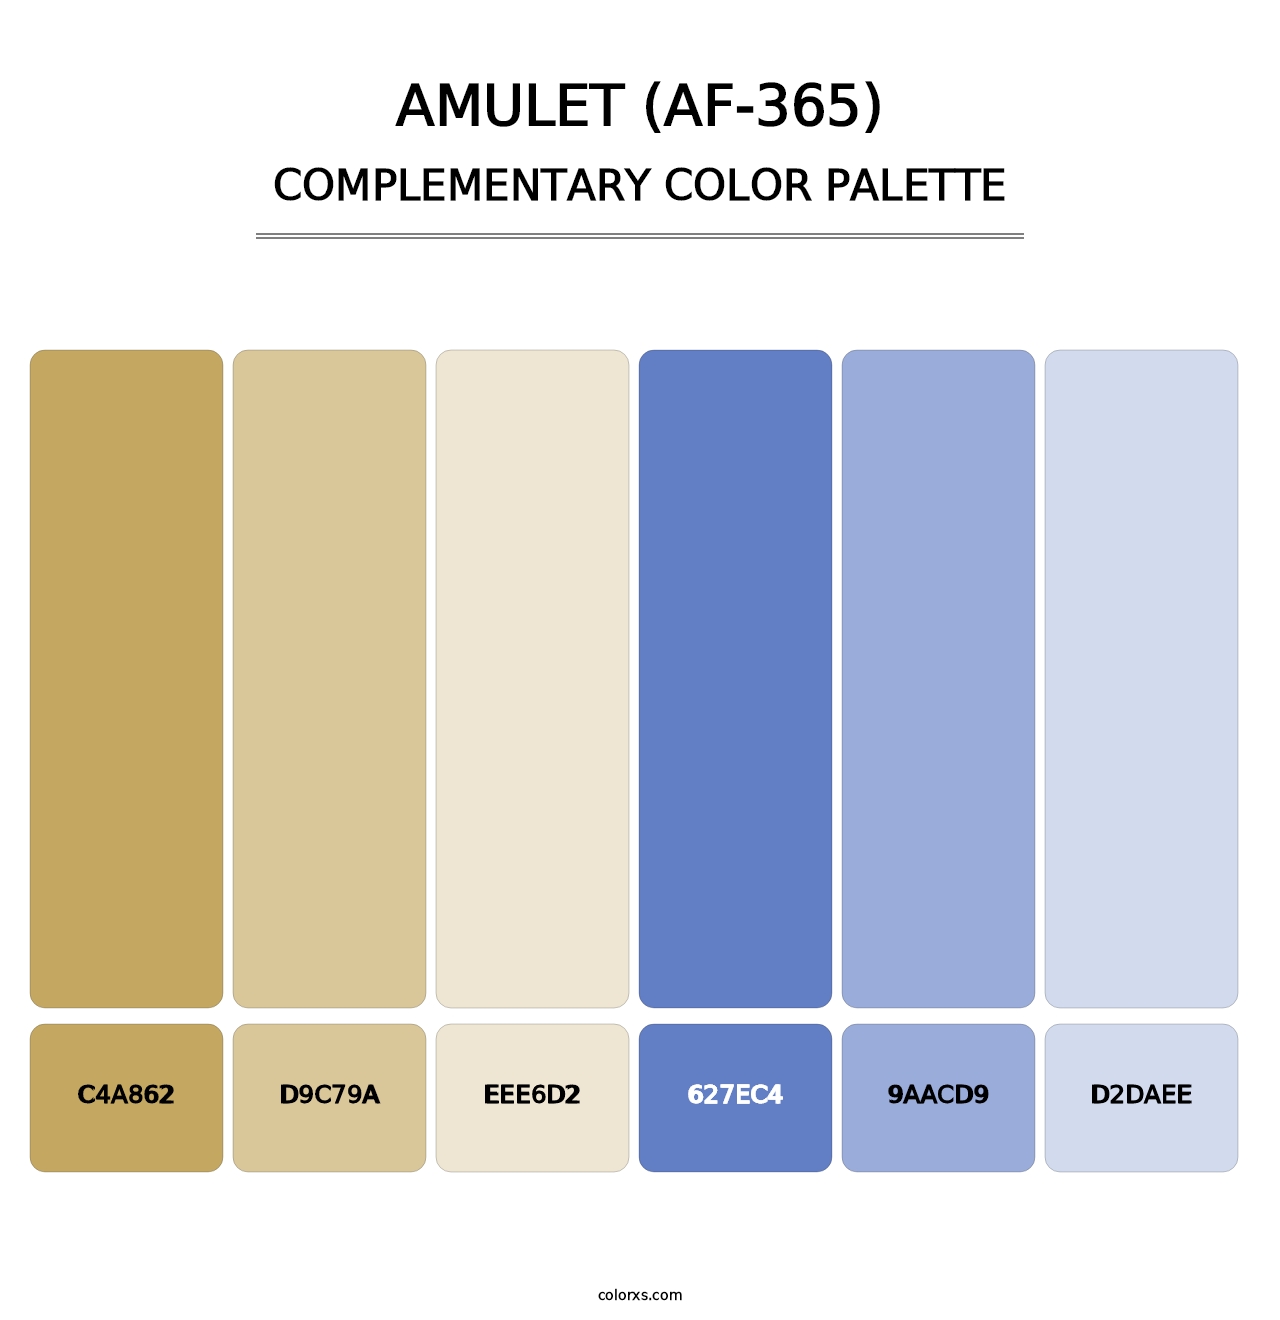 Amulet (AF-365) - Complementary Color Palette